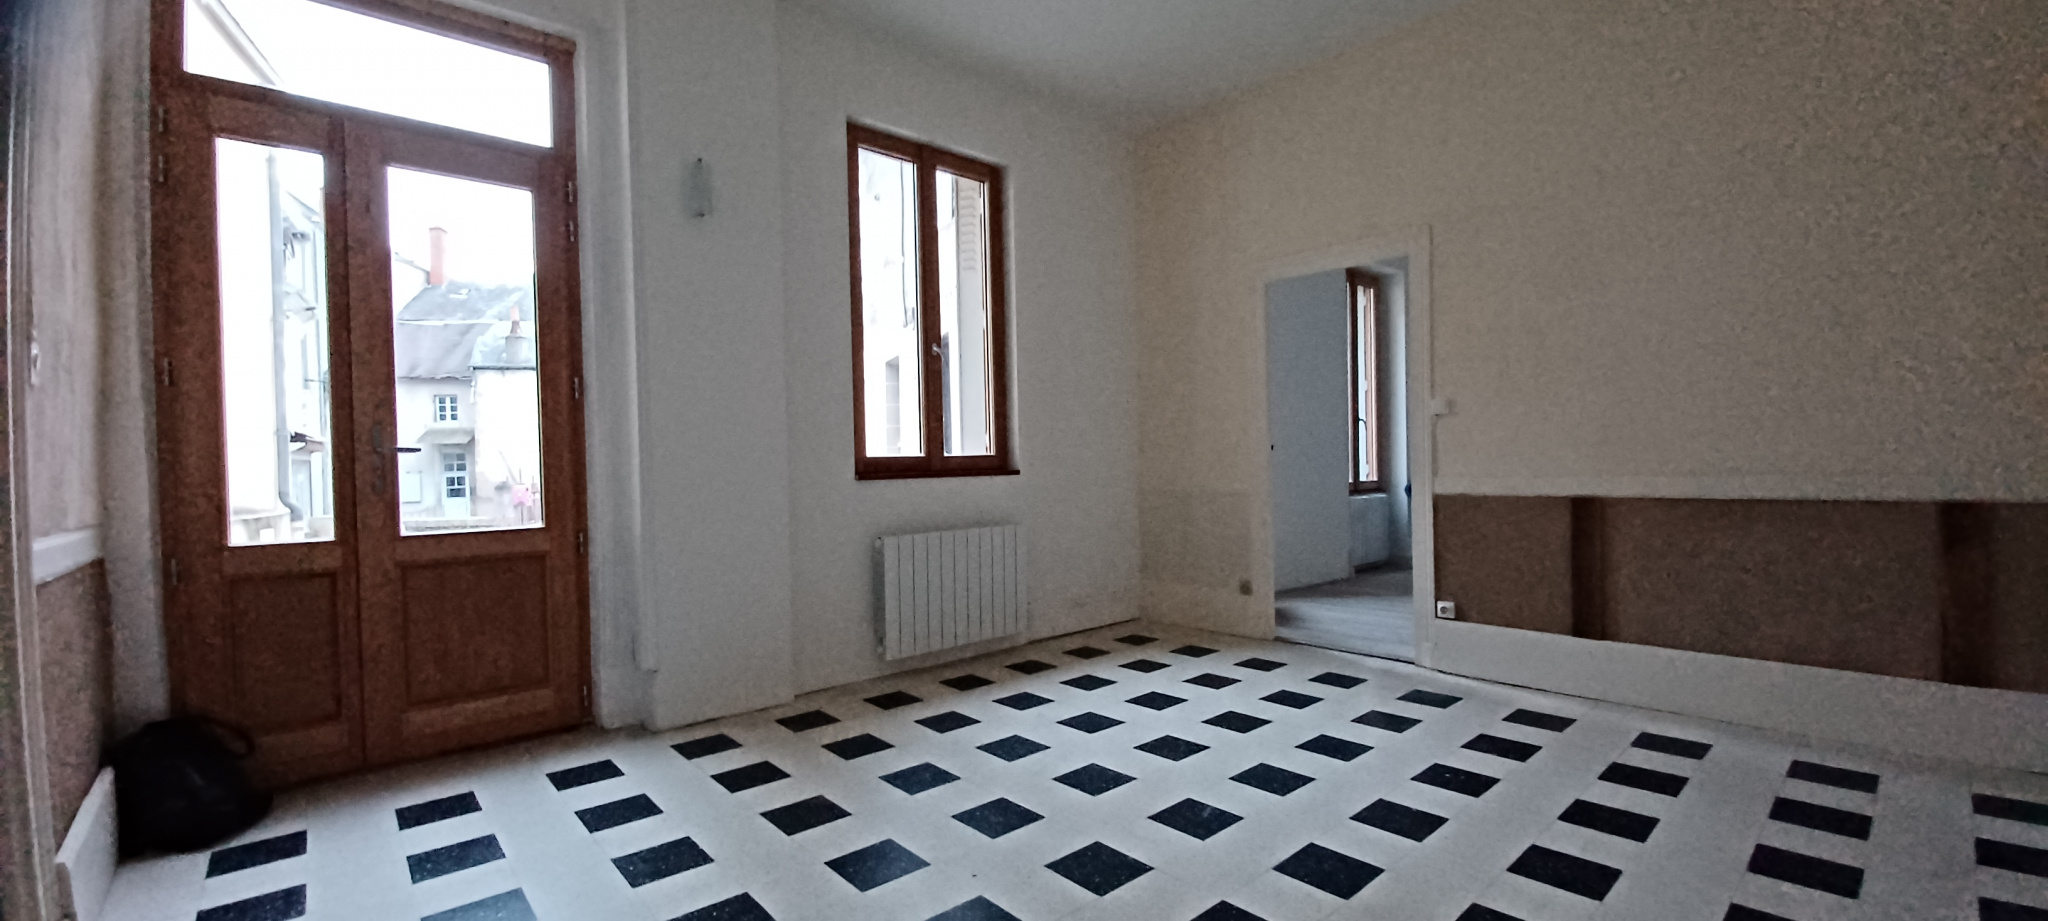 Appartement 2 pièces - 48m² - BOURBON L ARCHAMBAULT